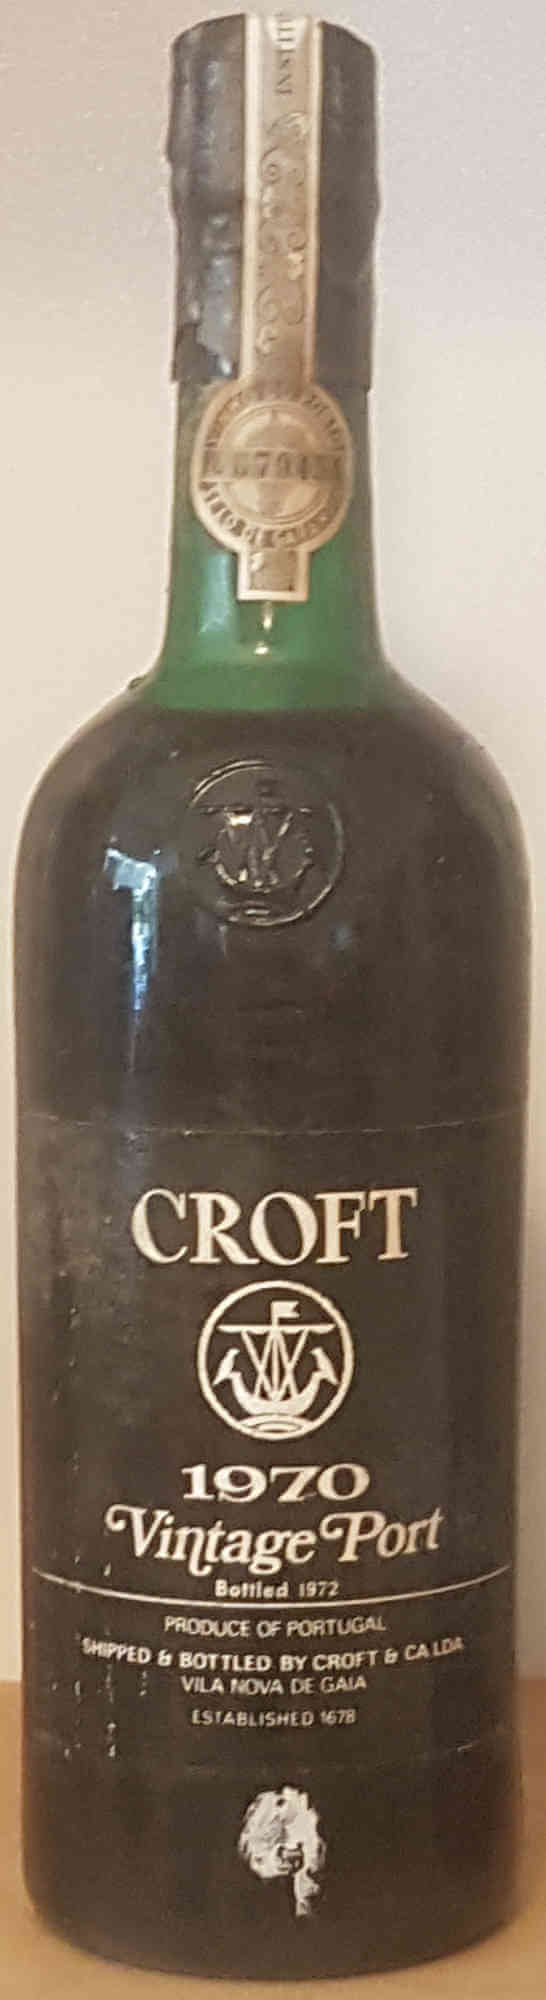 Croft-Vintage-Port-1970-upper-shoulder